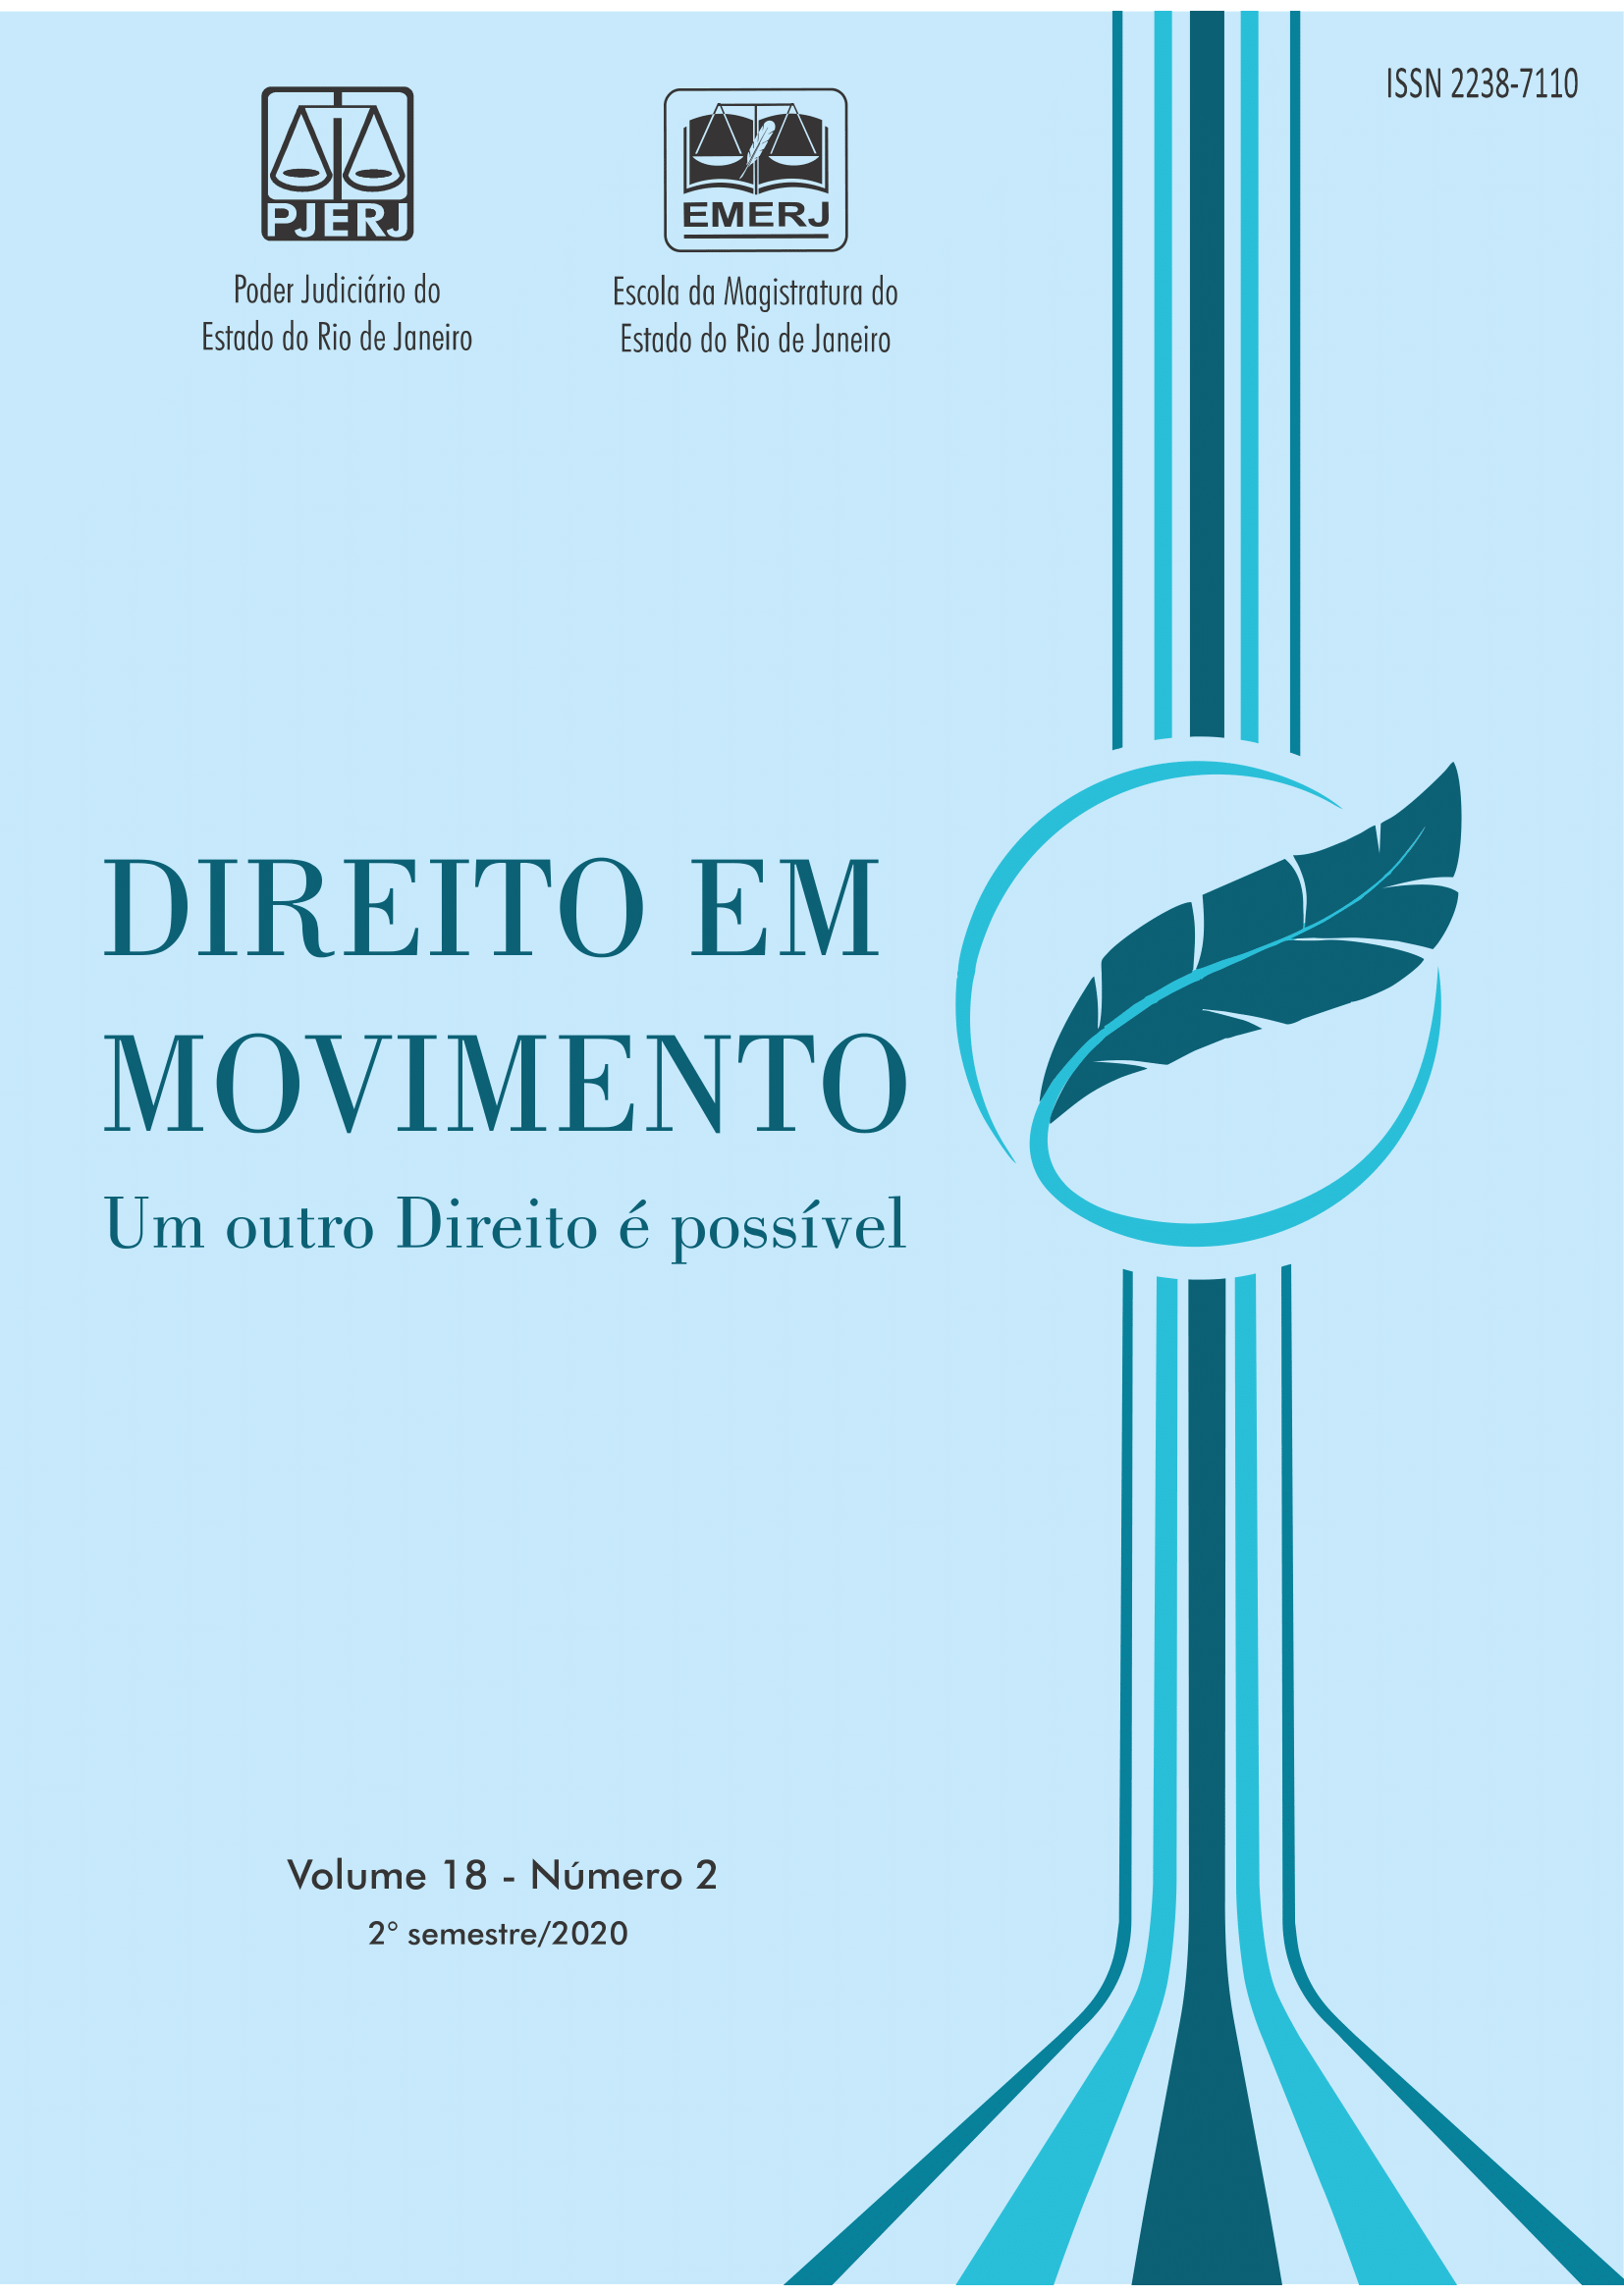 					Ver Vol. 18 Núm. 2 (2020): Revista Direito em Movimento
				